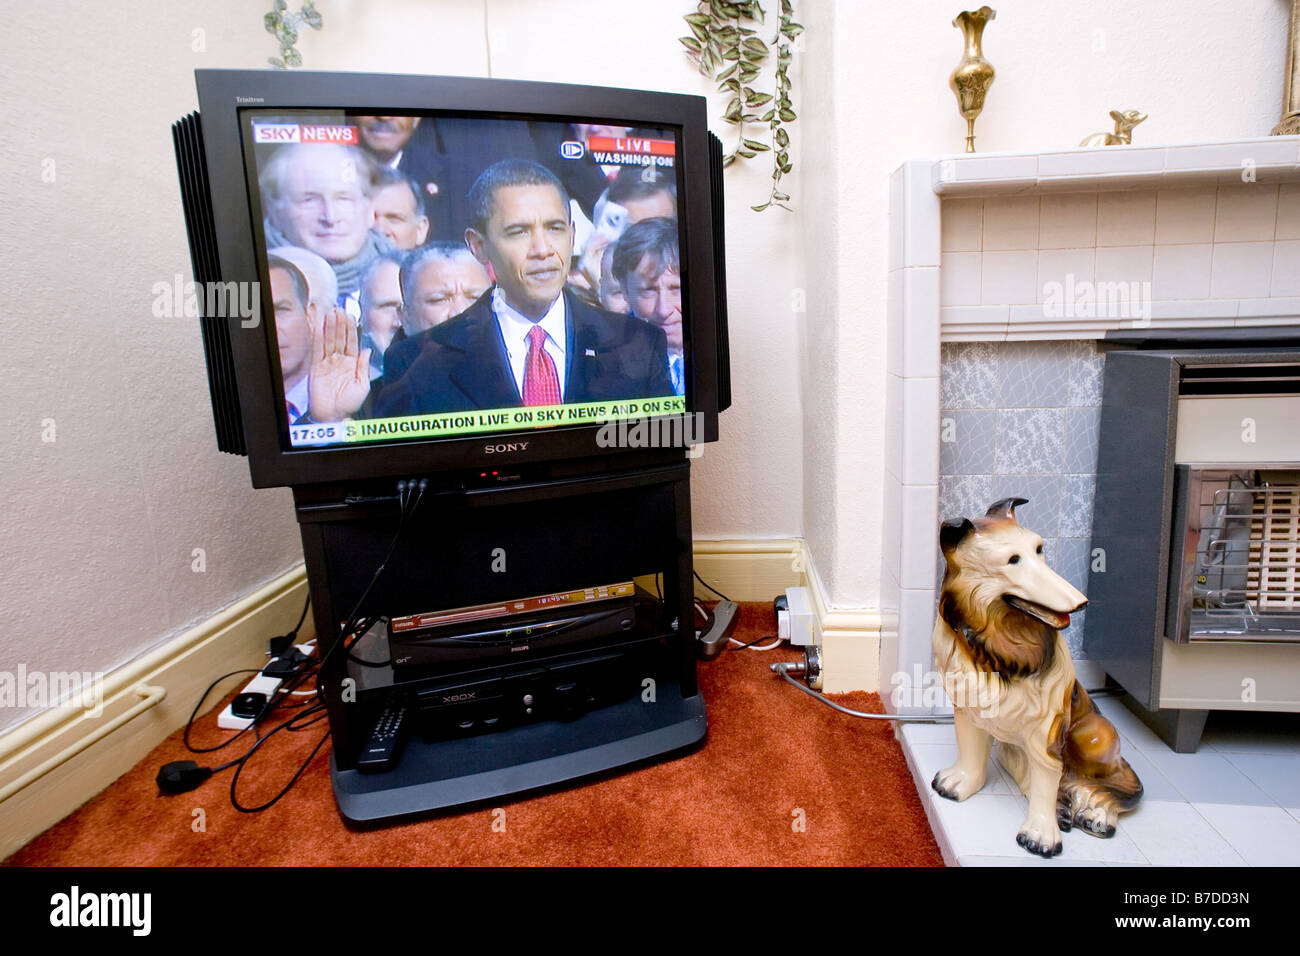 Betrachtet wird live im Fernsehen in den uk Barack Obama zum 44. US-Präsidenten vereidigt. Stockfoto